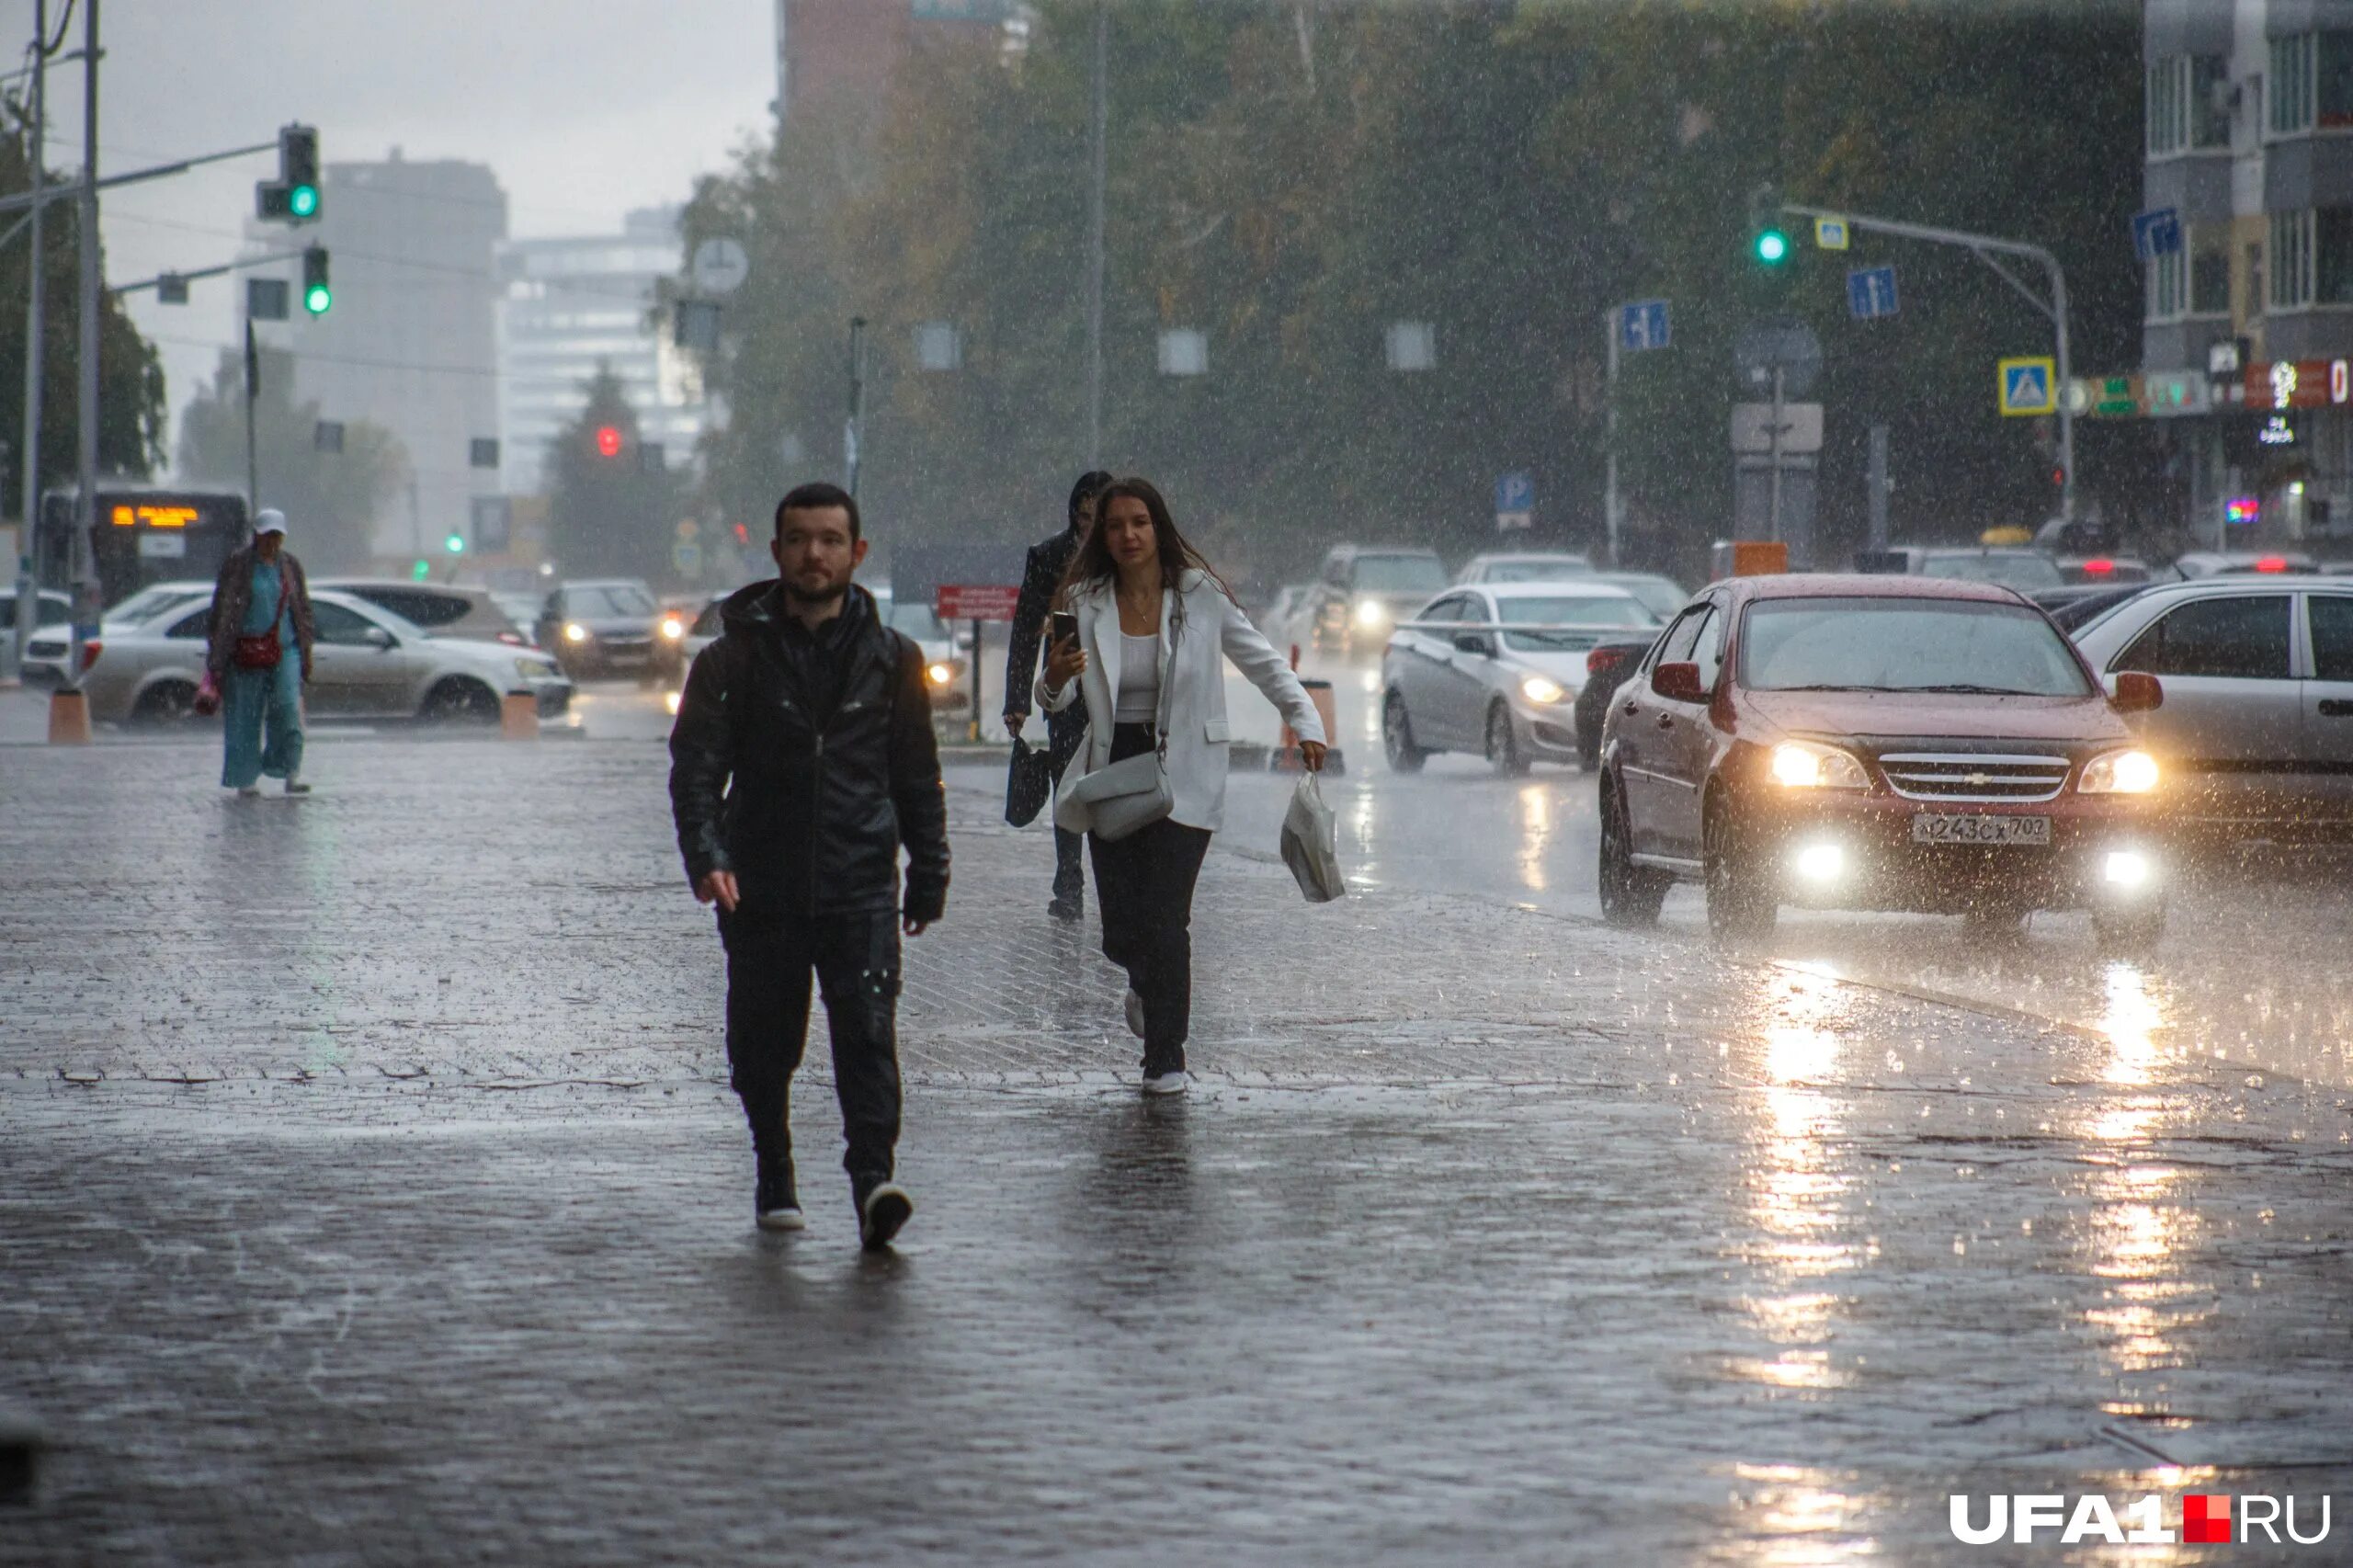 Осадки в уфе. Осень улица дождь. Сильный осенний ливень b xtkjdtr ,TP pjynf фото gif.